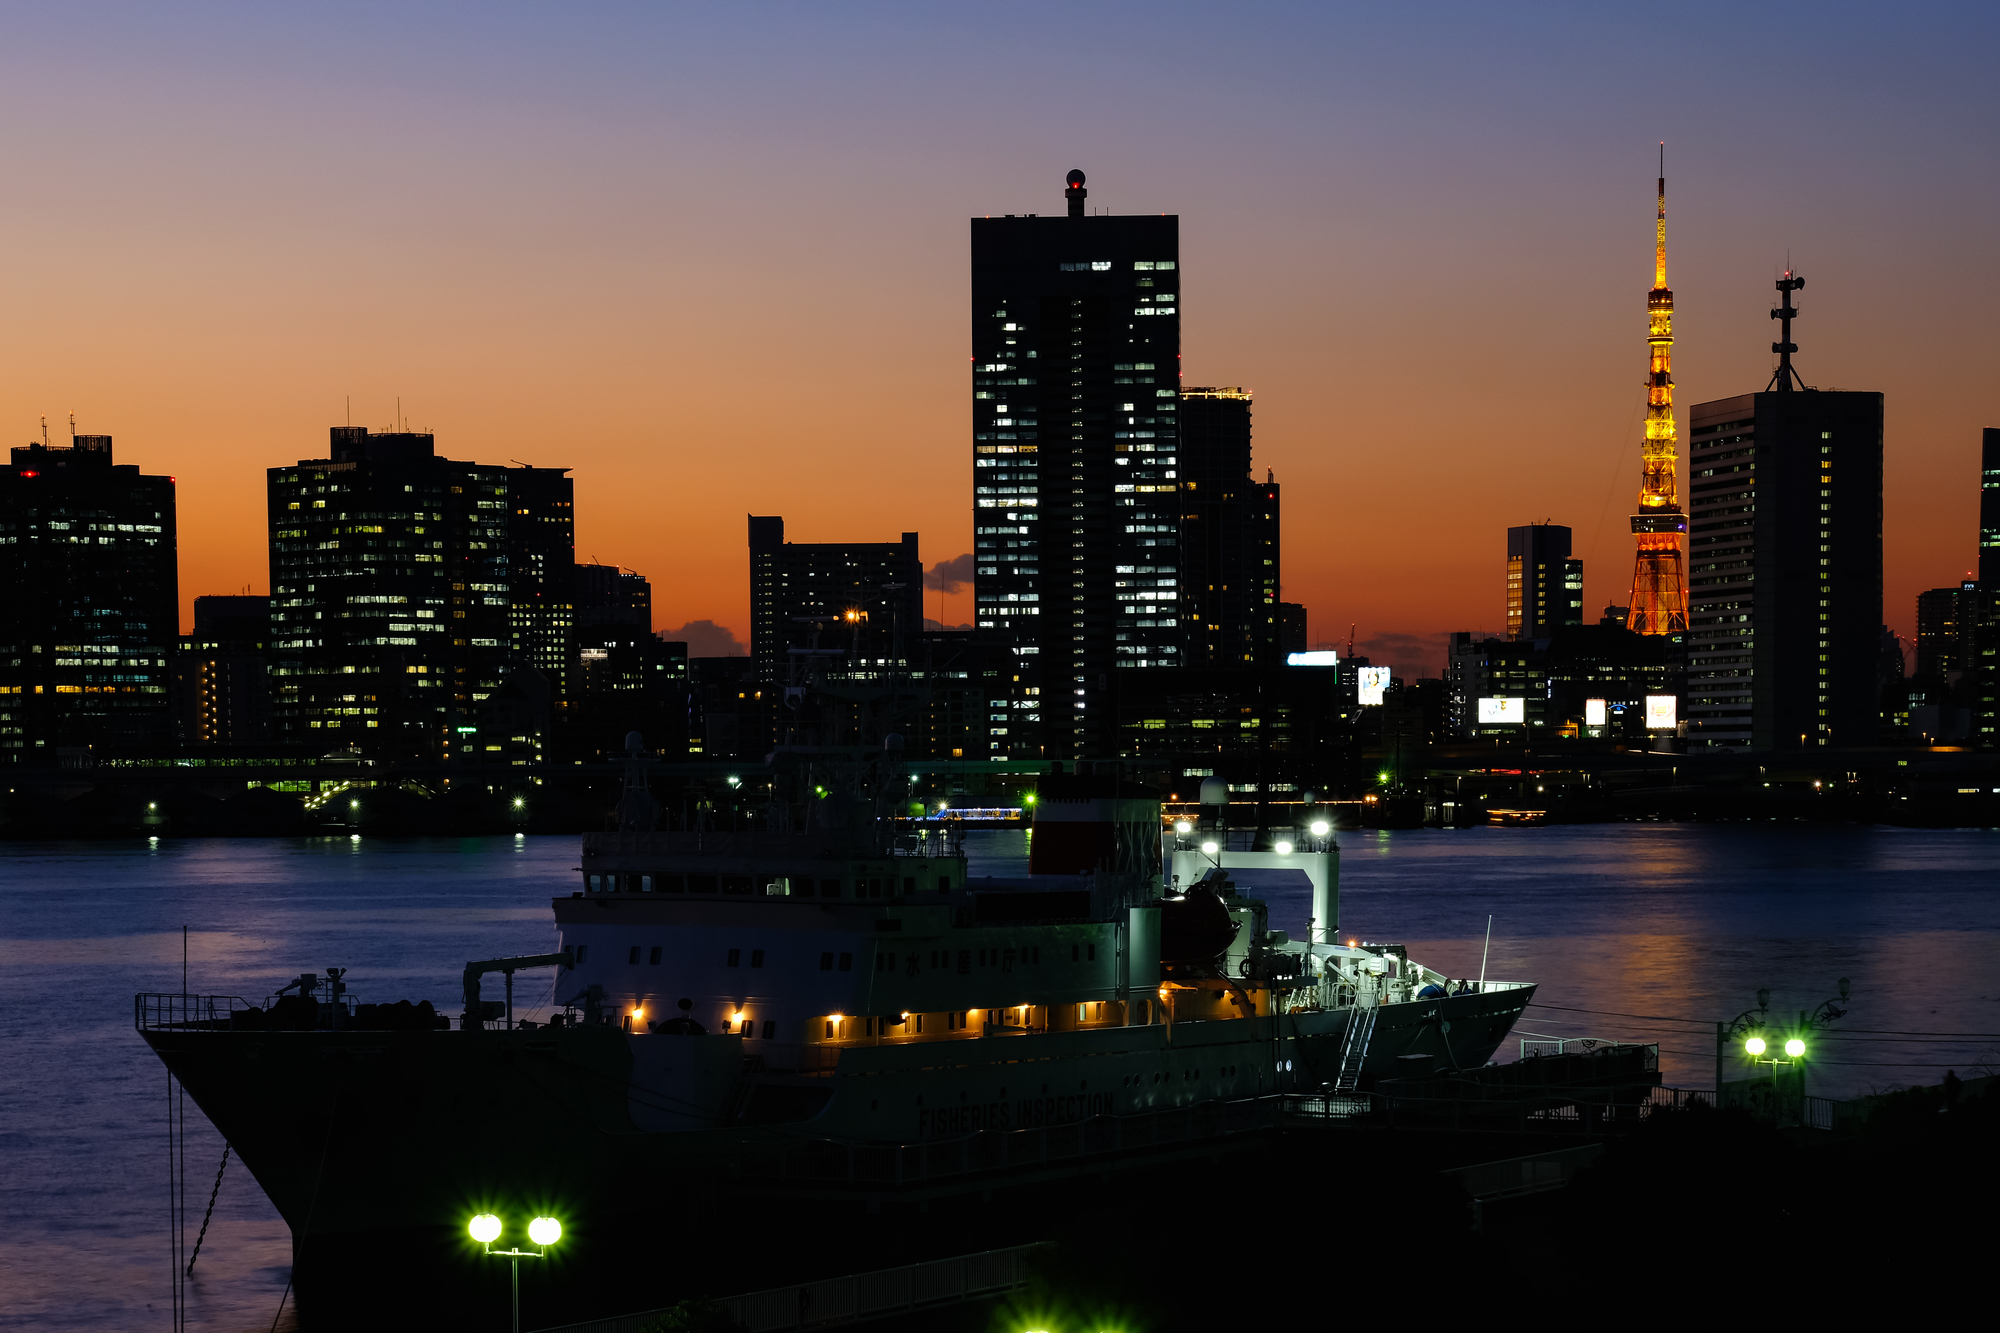 船の浮かぶ海男後ろにはライトアップされた東京タワーと街並み